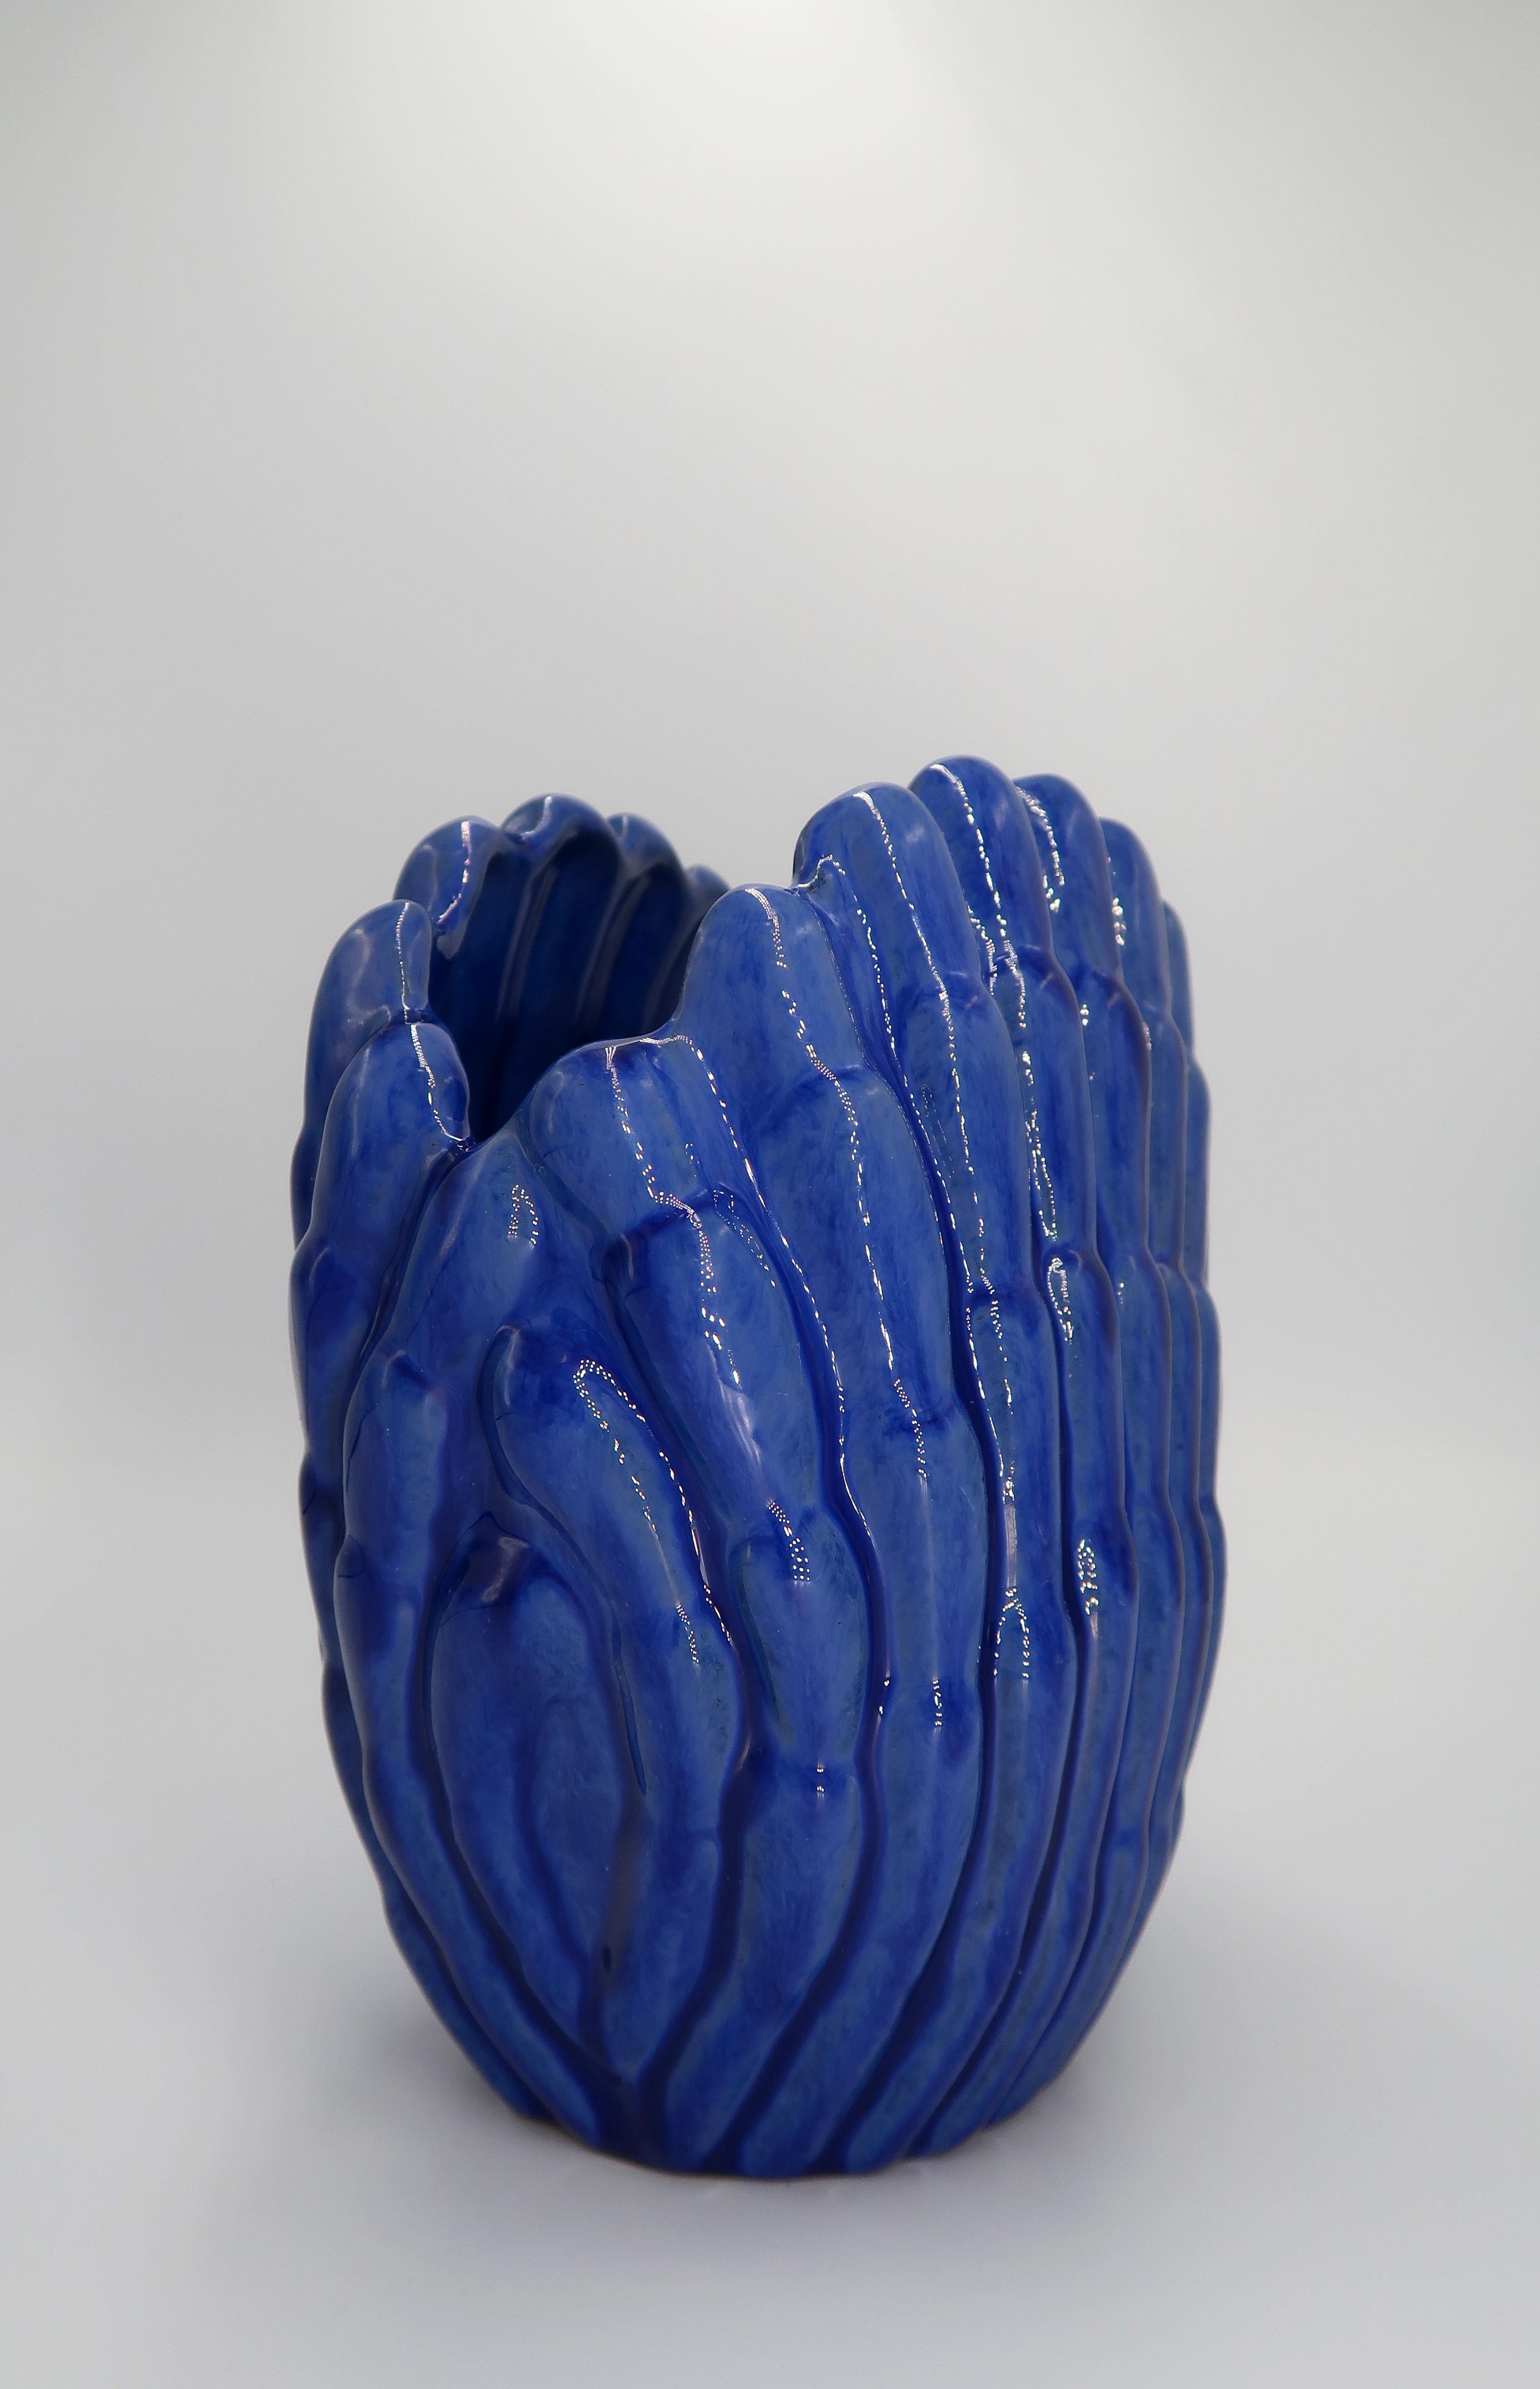 Glazed 1940s Art Deco Cobalt Blue Shell Shaped Vase, Vicke Lindstrand, Sweden For Sale